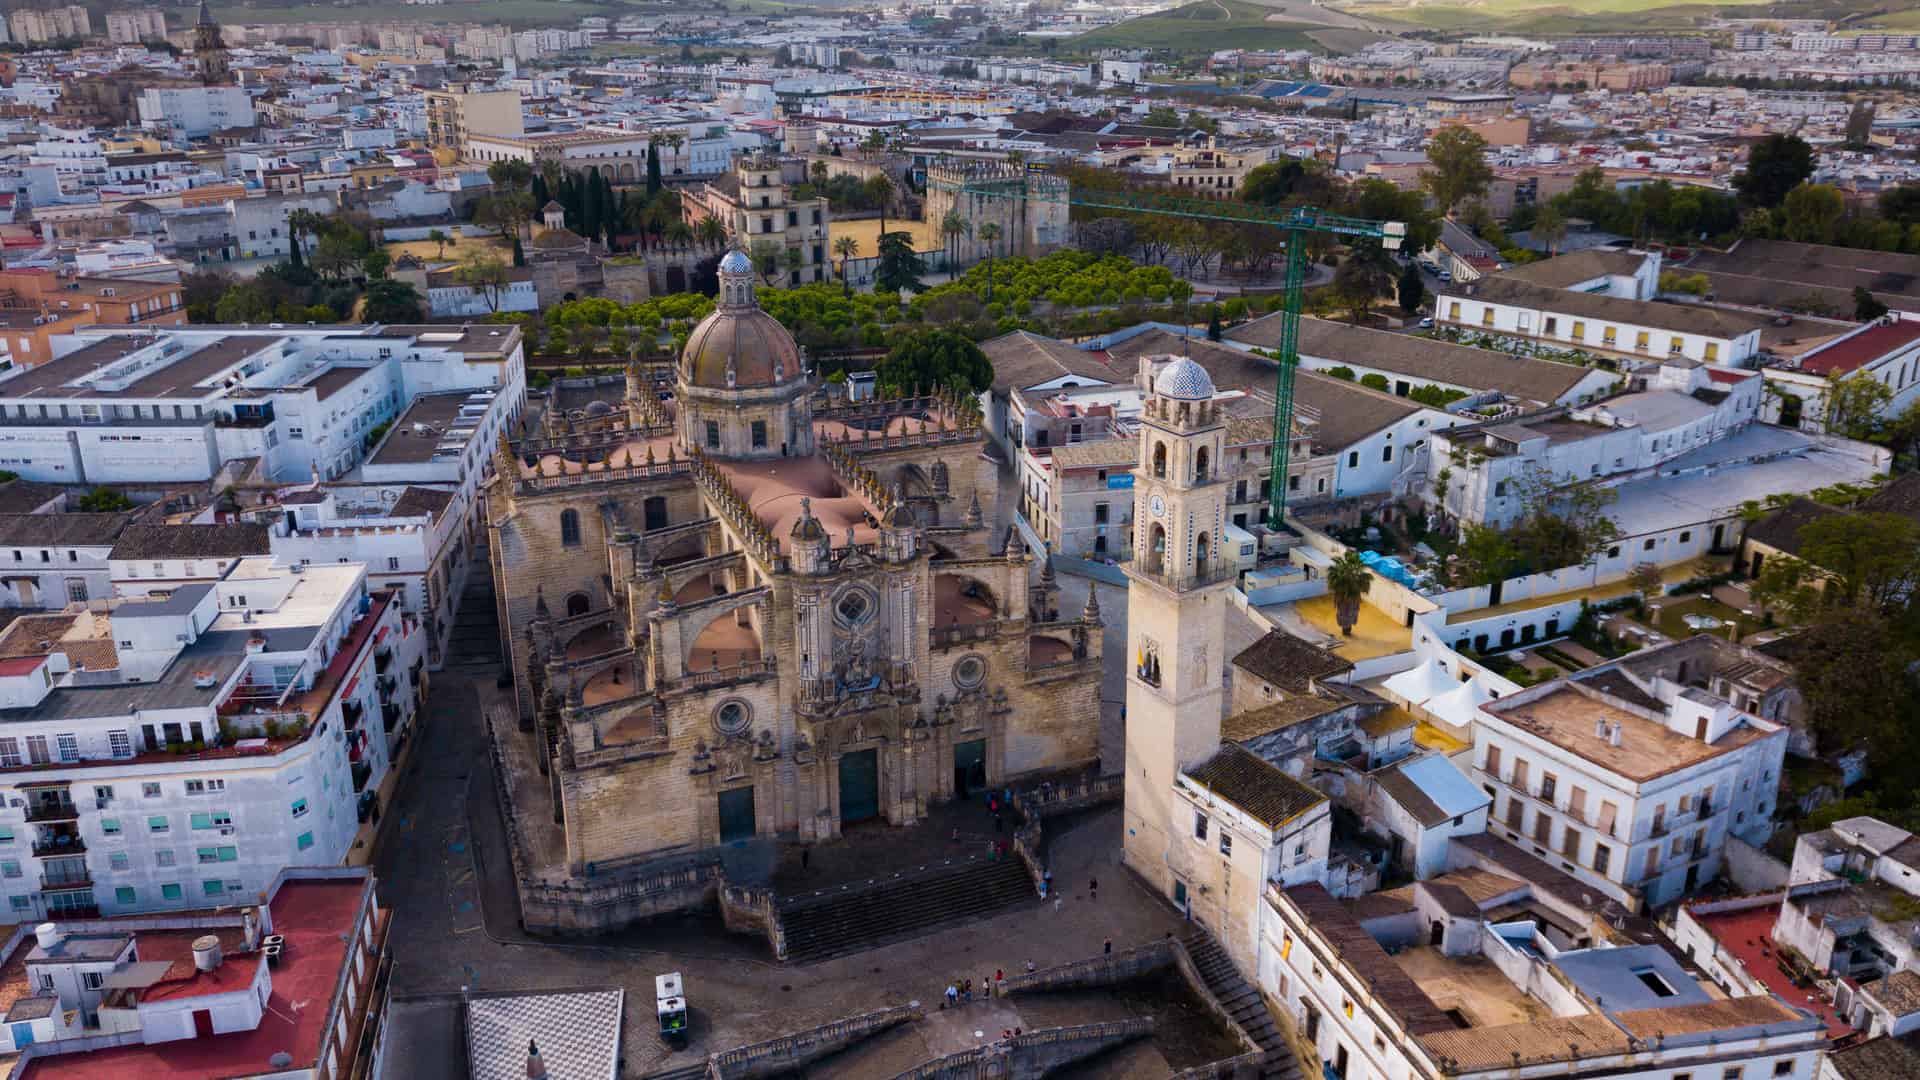 Vista aérea de Jerez de la frontera con Catedral y Alcázar morisco donde están disponibles los servicios telefónicos de yoigo